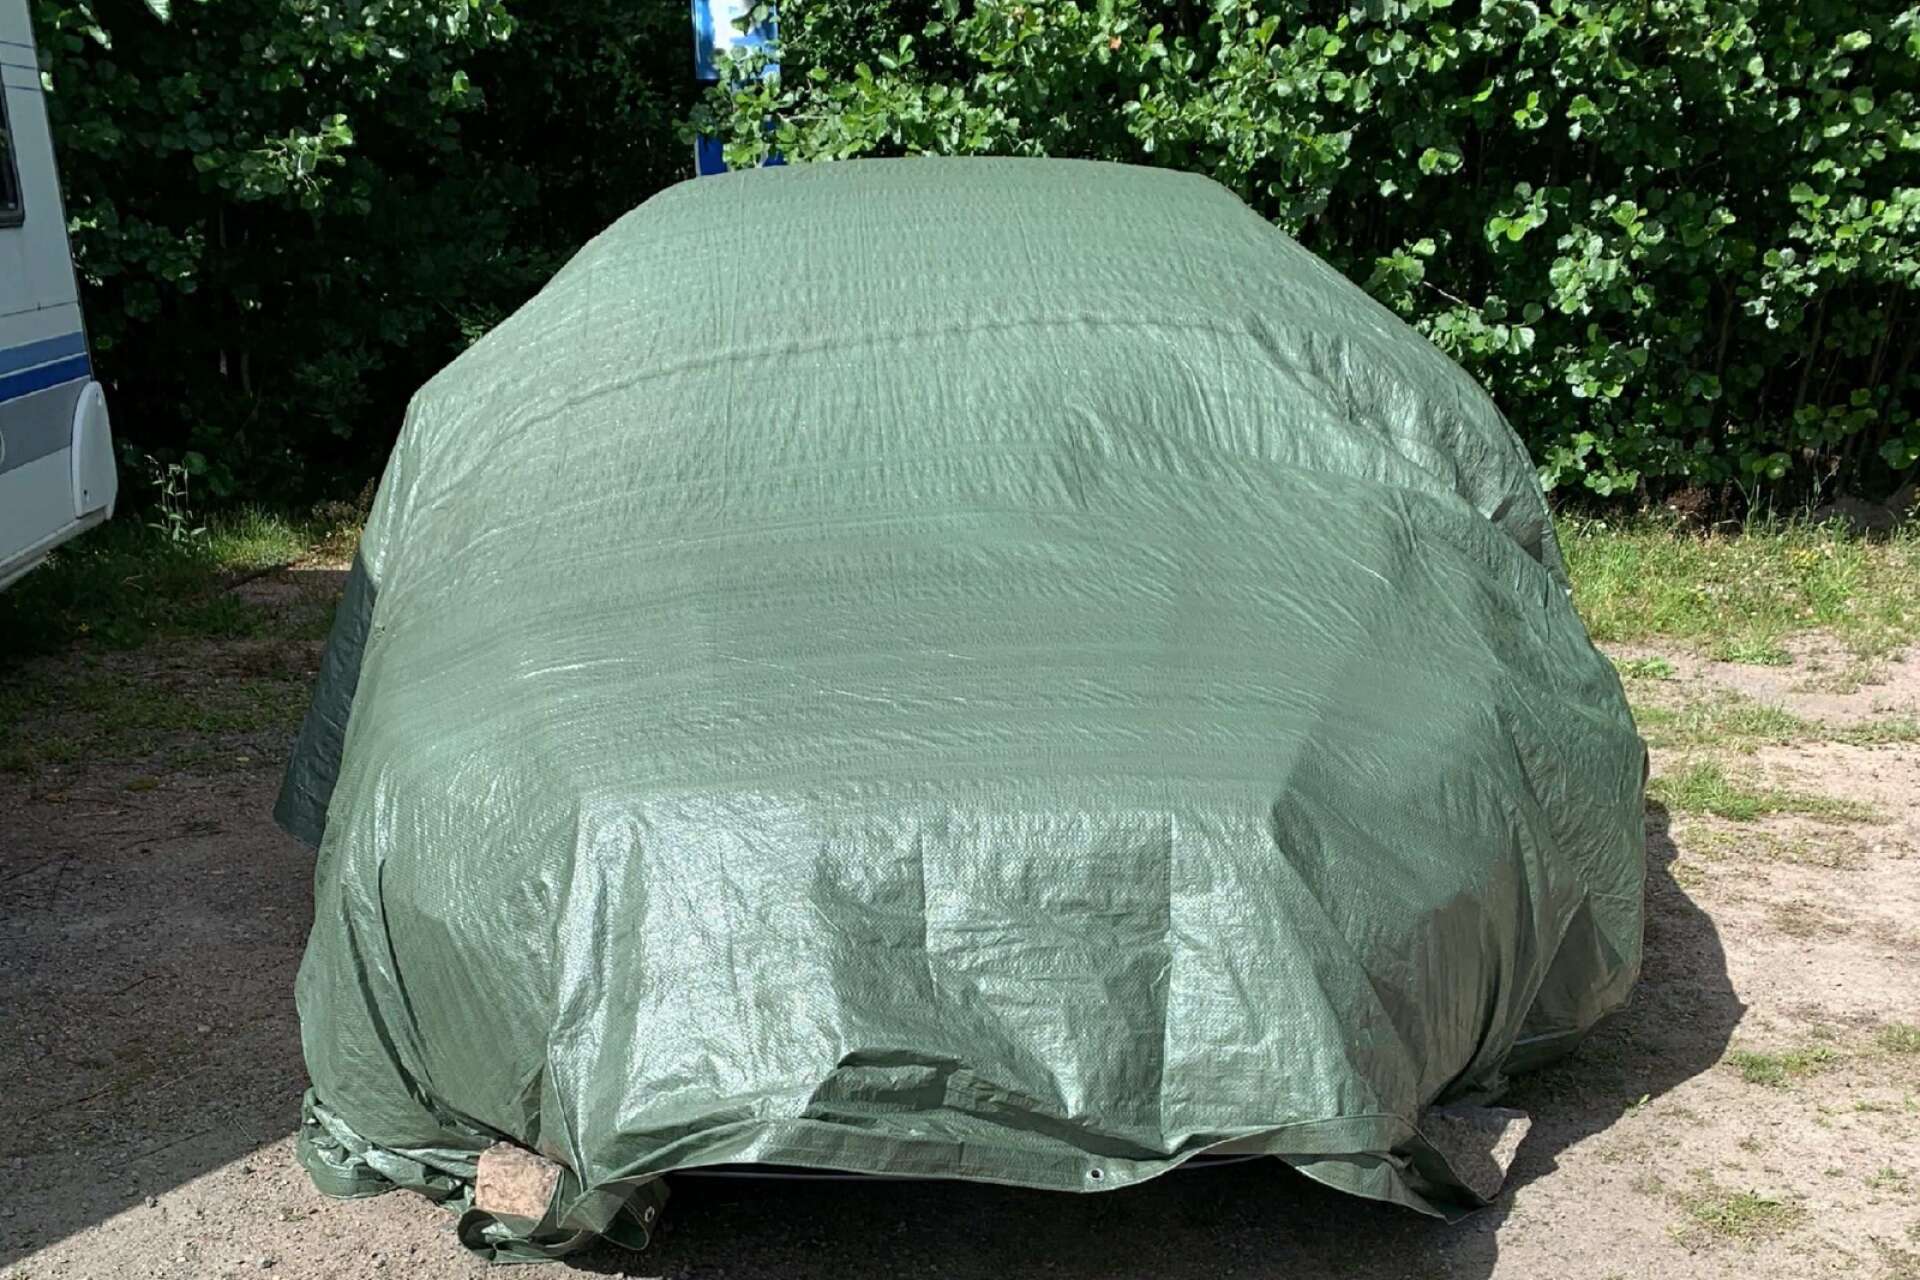 Den ovanliga V8-volvon hittades några dagar efter att den försvunnit vid Torsvikens camping. Den stod dold under en presenning vilket gjorde att campinggästerna blev misstänksamma och larmade polis.